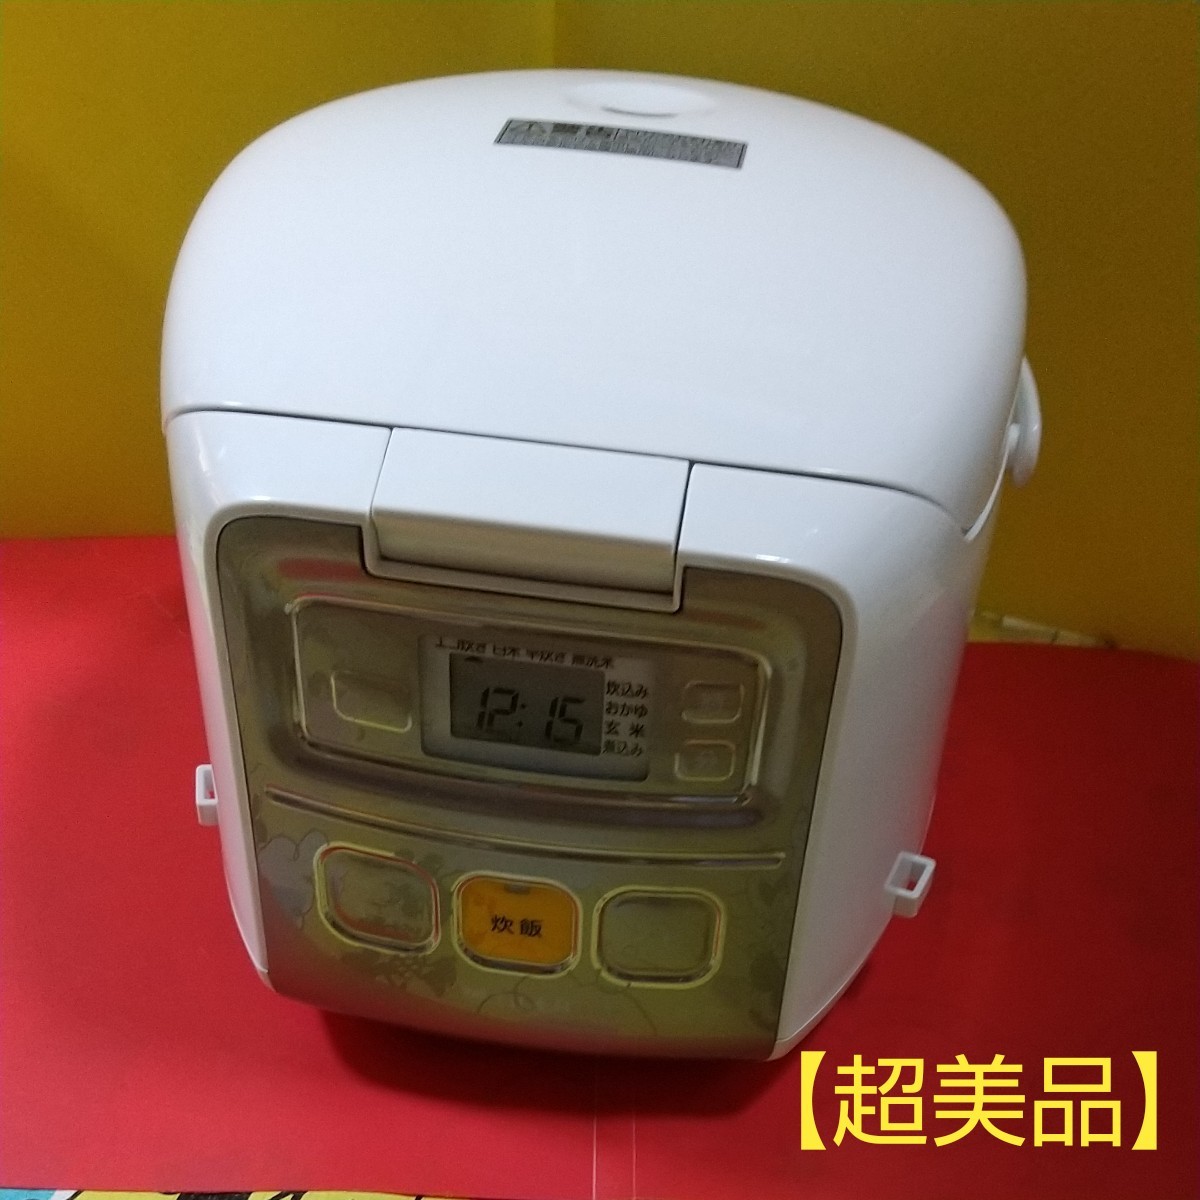 ★ 2021年製  タイガーマイコン炊飯ジャー JAI-R551     (3合炊き)